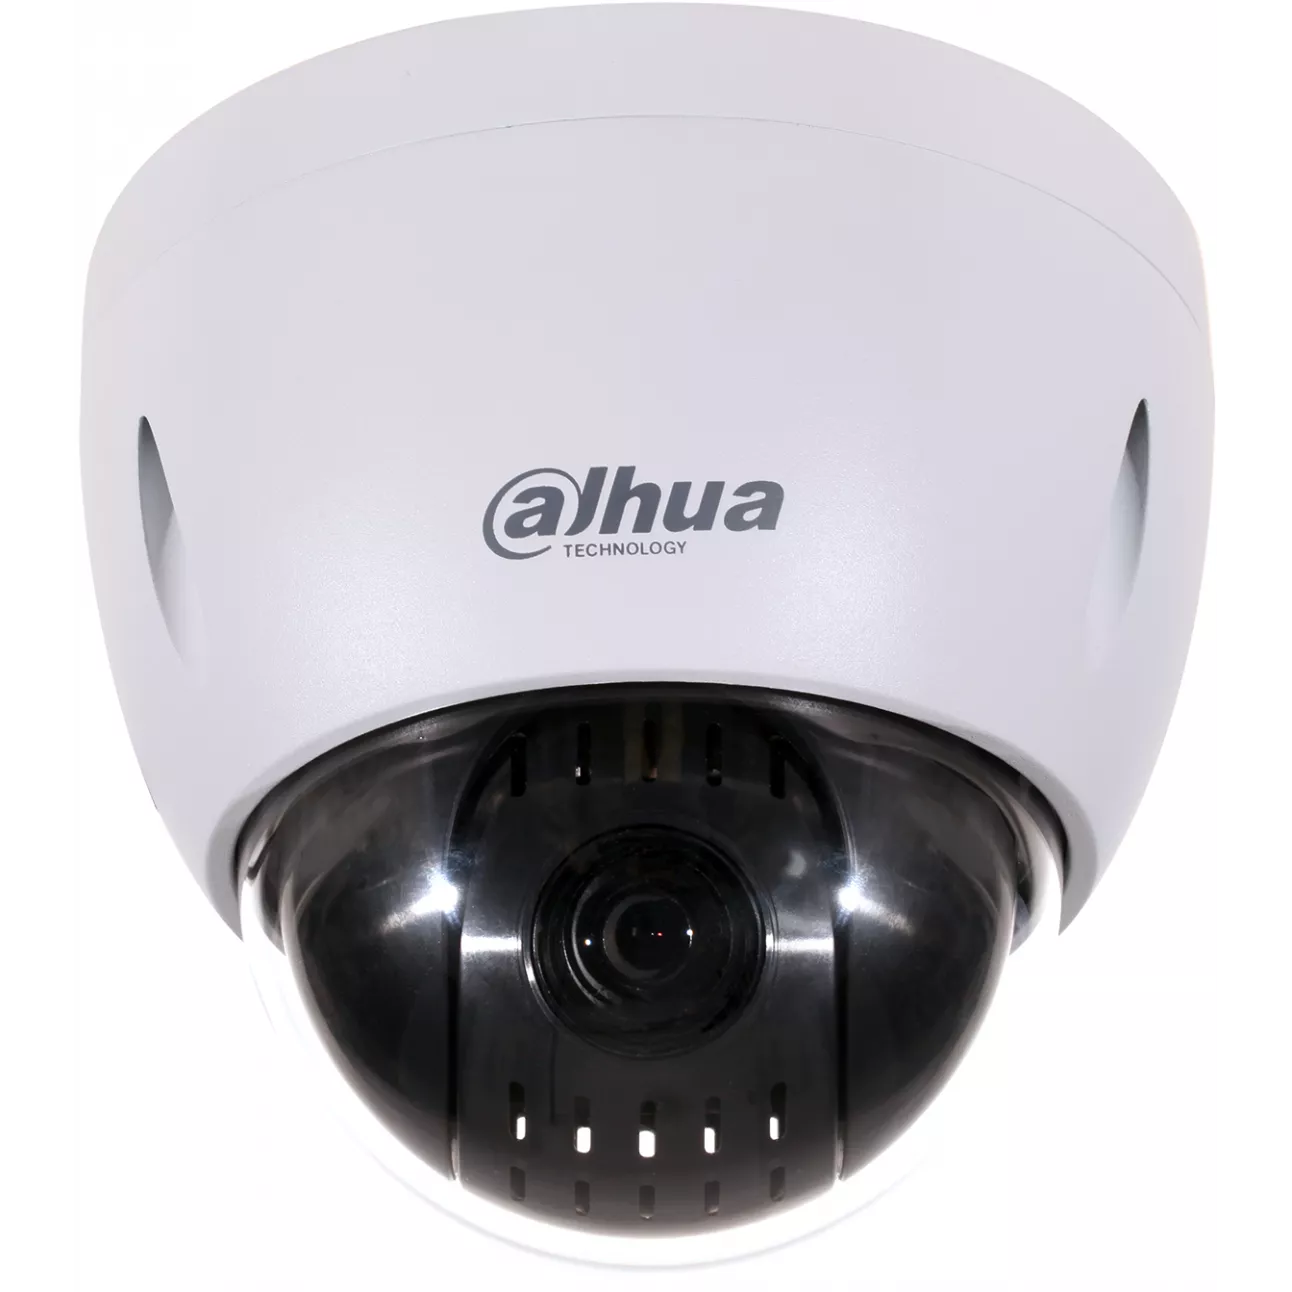 IP камера Dahua DH-SD42212T-HN скоростная купольная поворотная 2Мп с 12x оптическим увеличением, 25 к/с @ 1080p, 50 к/с @ 720p, AC 24 В / PoE 802.3at